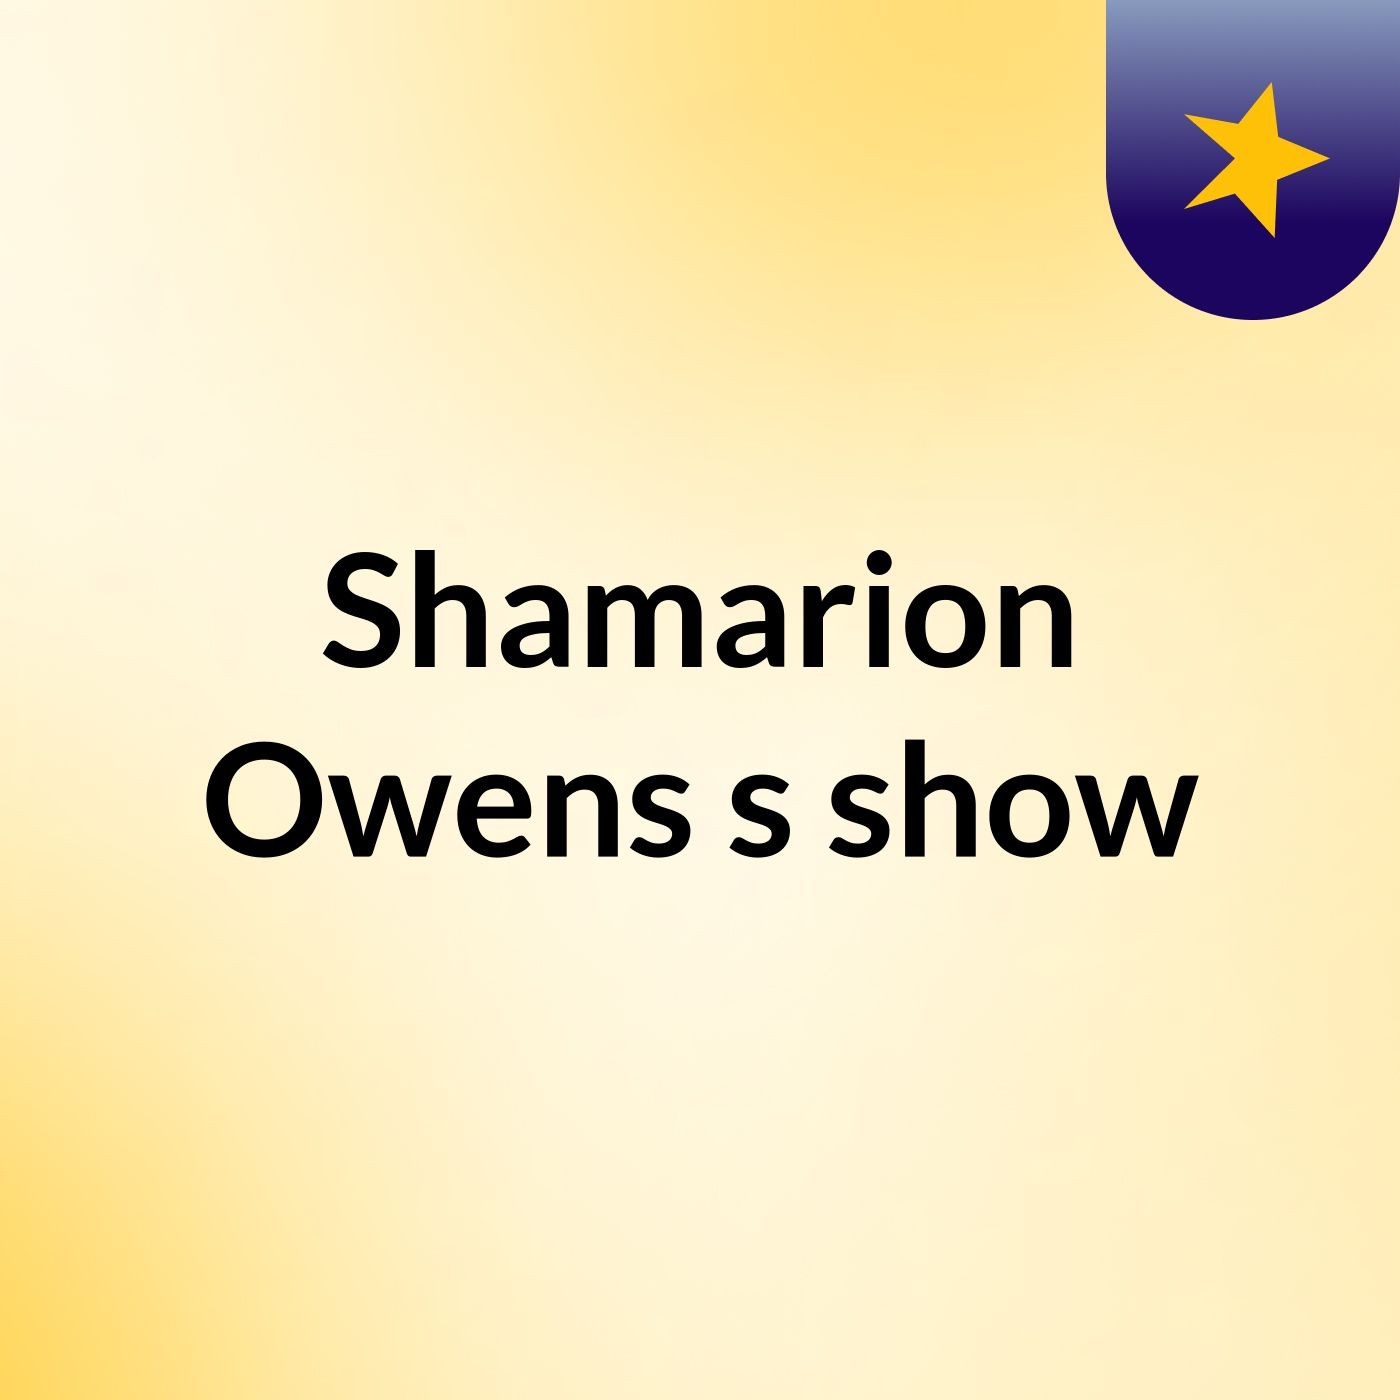 Shamarion Owens's show